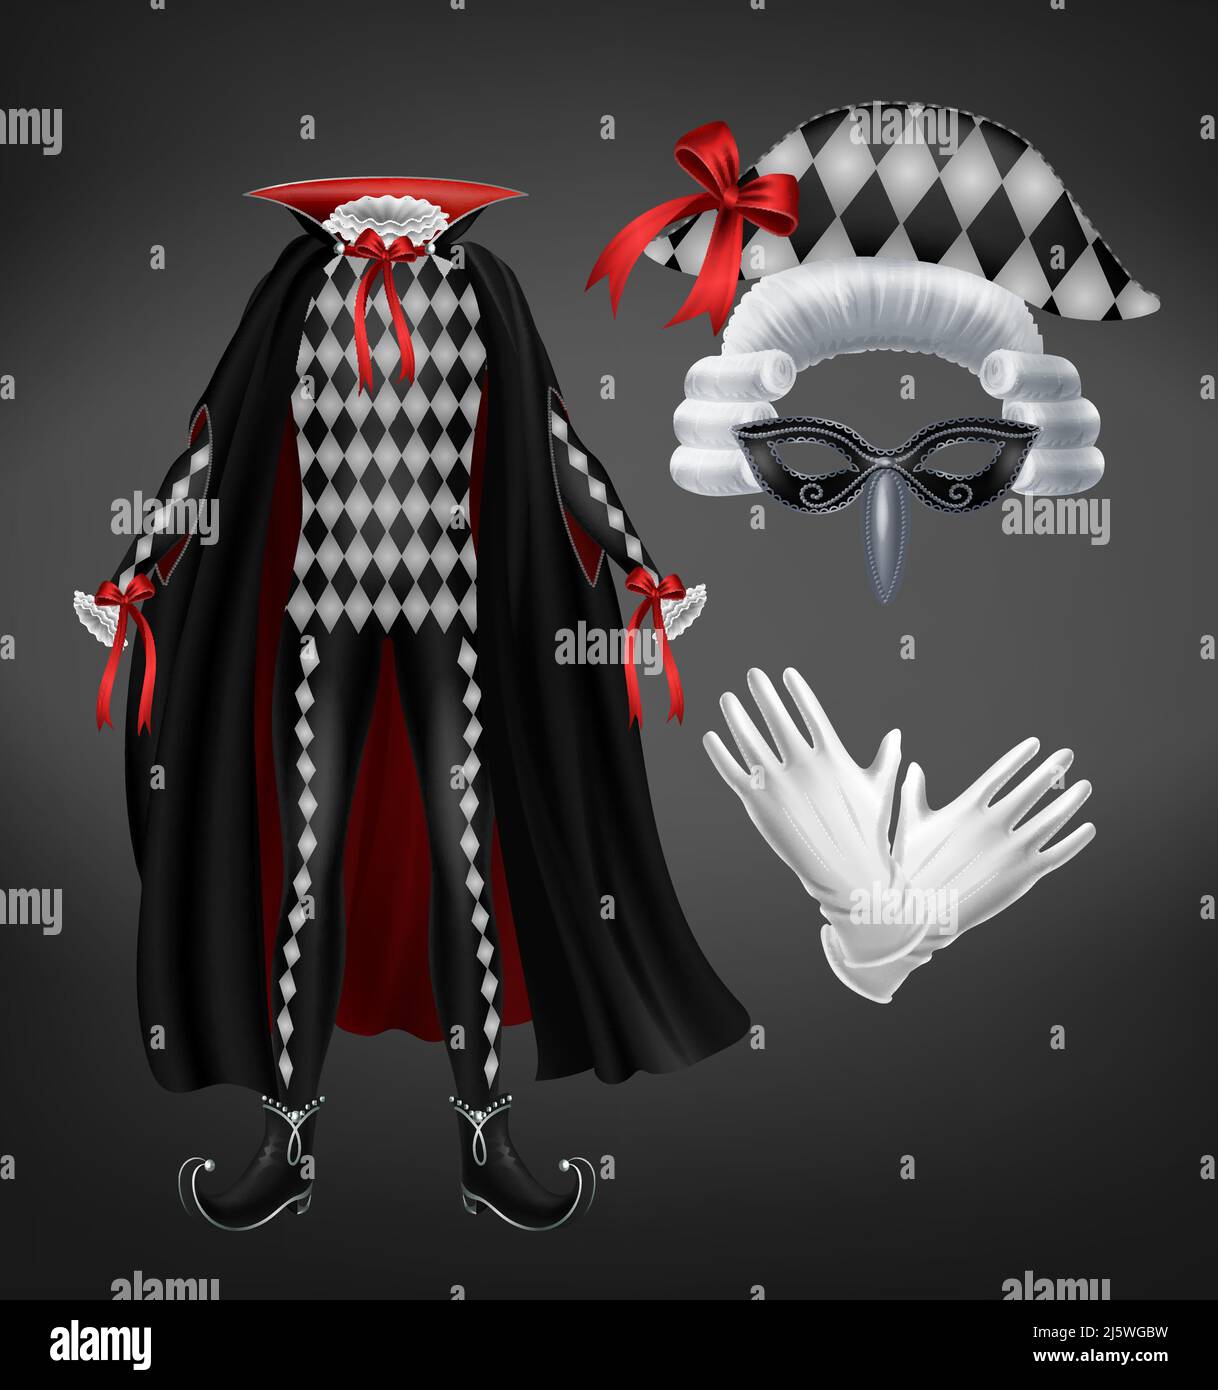 Costume di Harlequin con mantello, parrucca stellata, maschera e guanti bianchi isolati su sfondo nero. Tuta da Carnevale con motivo rombo per masquer veneziano Illustrazione Vettoriale